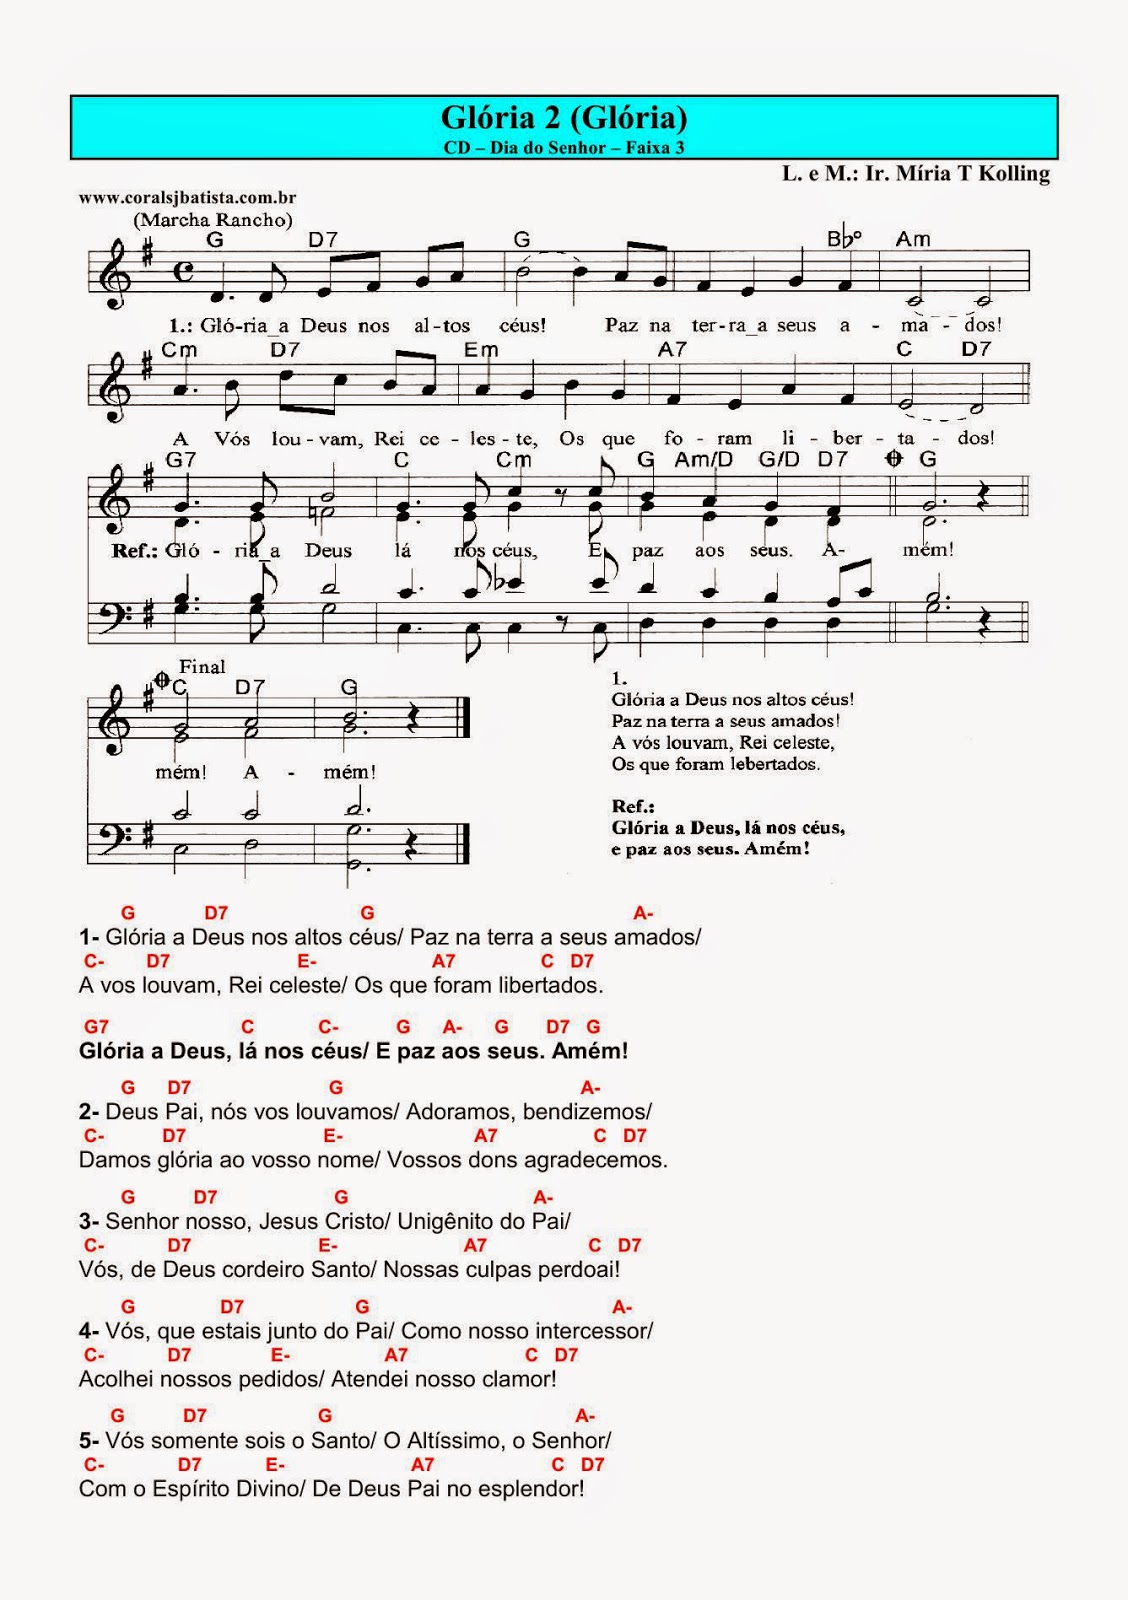 Cantos para Missa: Missa do dia 31/05/2018 - Solenidade do Santíssimo Corpo  e Sangue de Cristo - Ano B